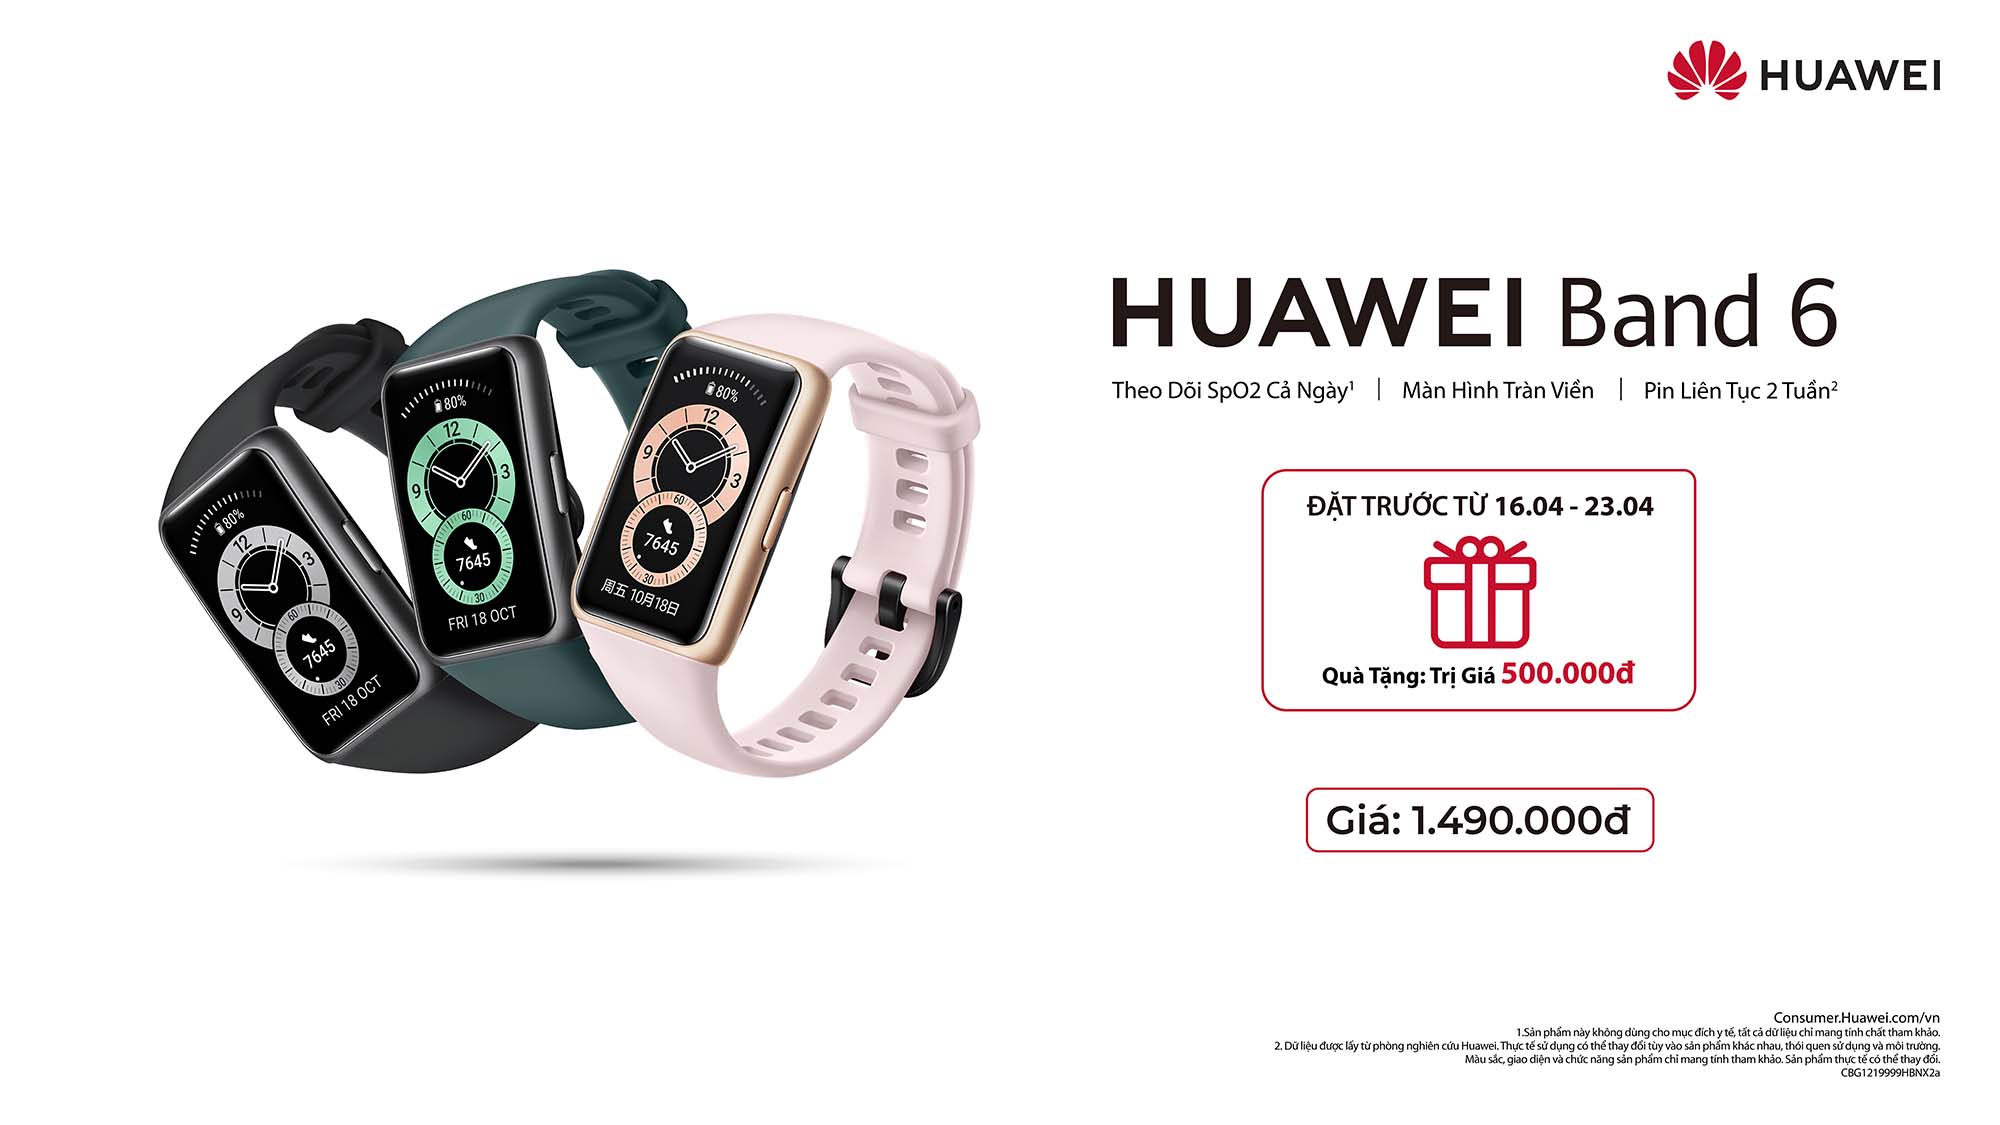 Vòng đeo tay thông minh HUAWEI Band 6 chính thức ra mắt tại Việt Nam: Theo dõi SpO2 cả ngày, màn hình AMOLED Fullview 1.47 inch, pin liên tục 2 tuần